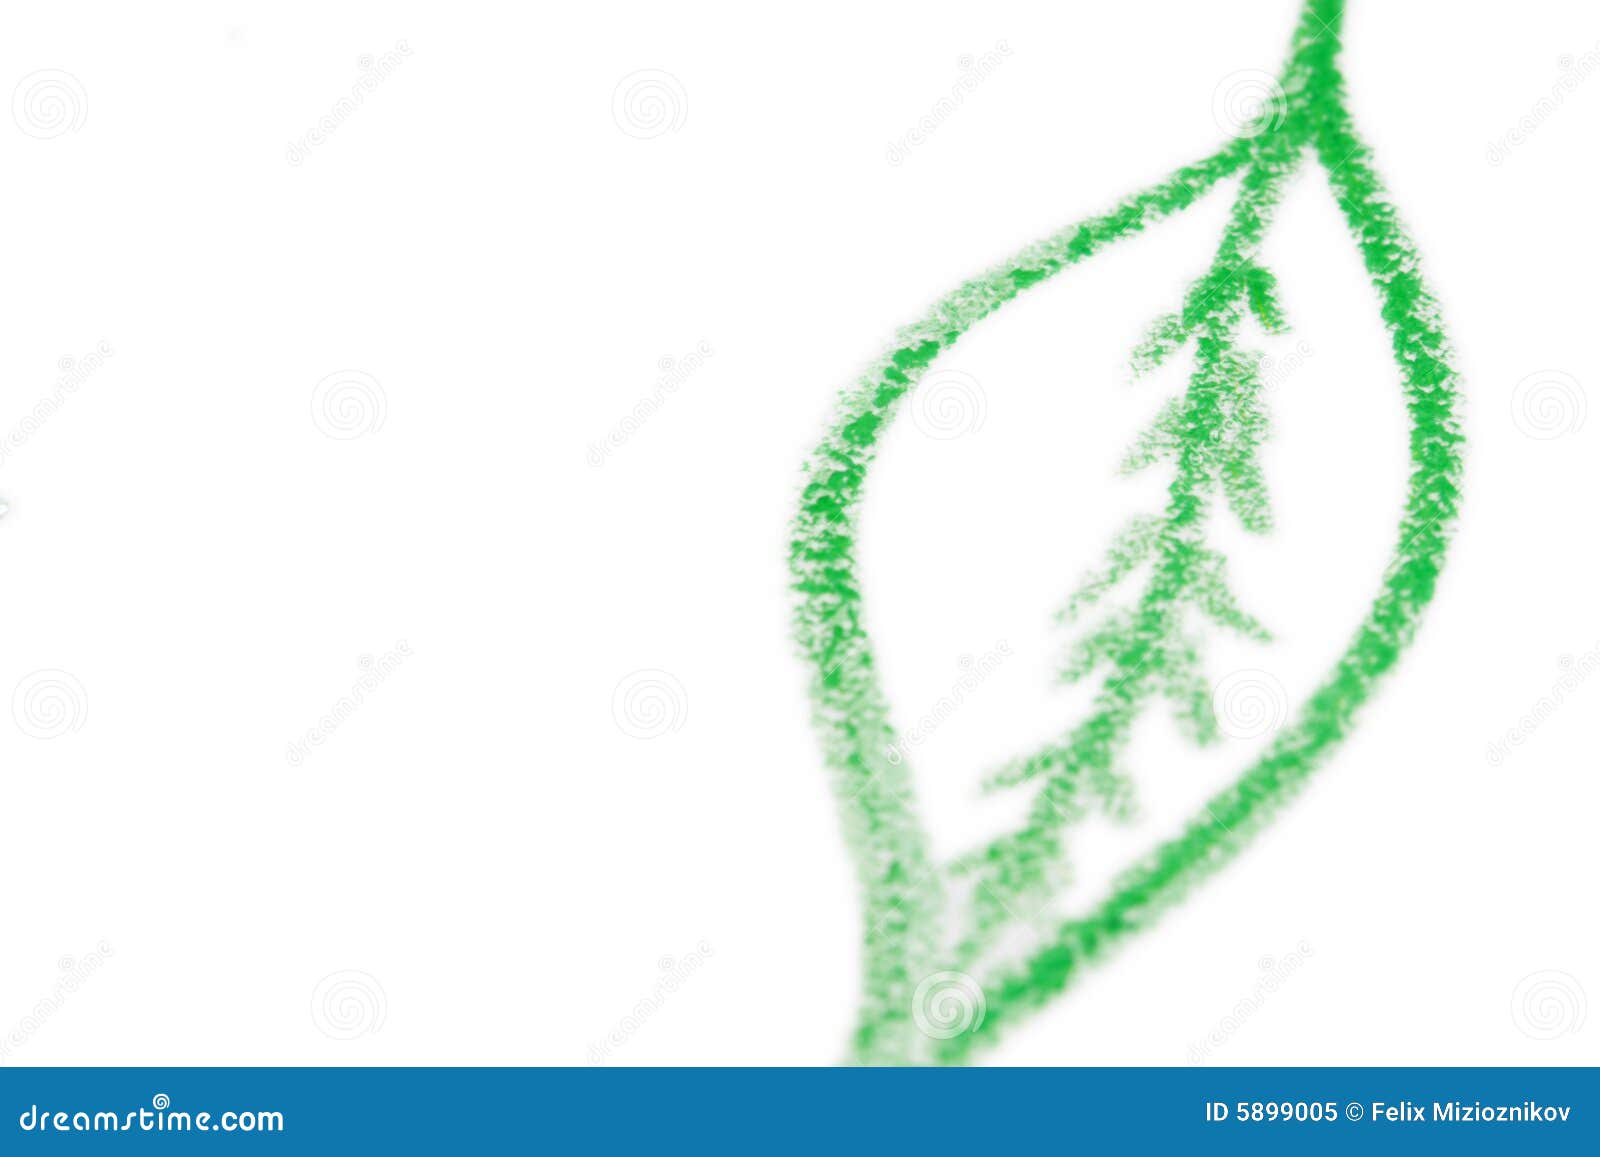 Leaf Sketch Images  Free Download on Freepik